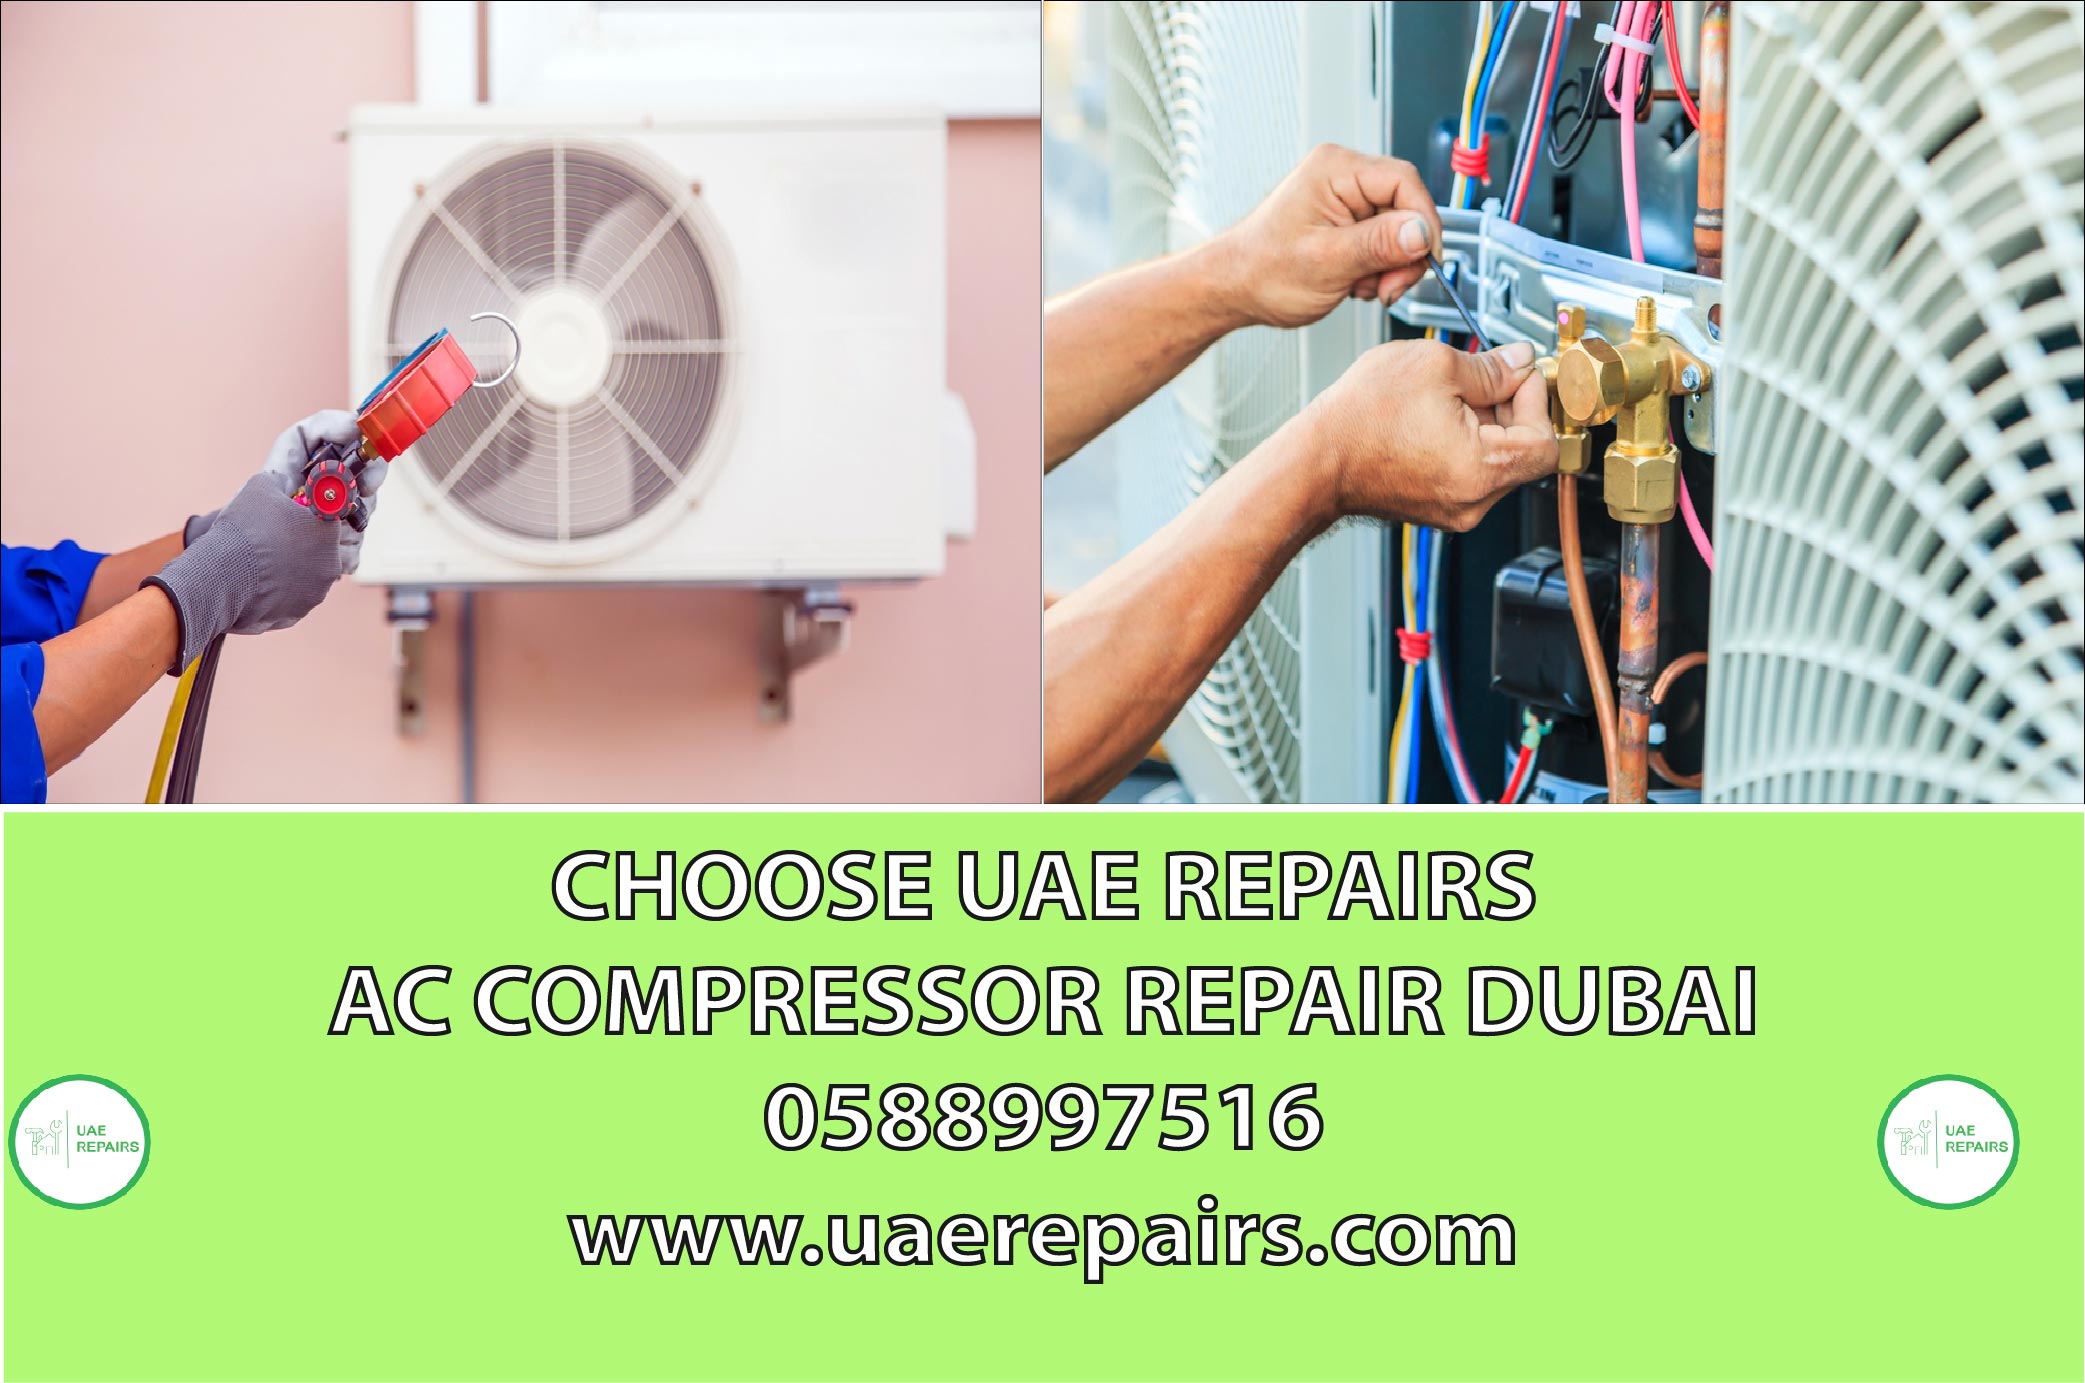 CHOOSE UAE REPAIRS FOR AC COMPRESSOR DUBAI 0588997516